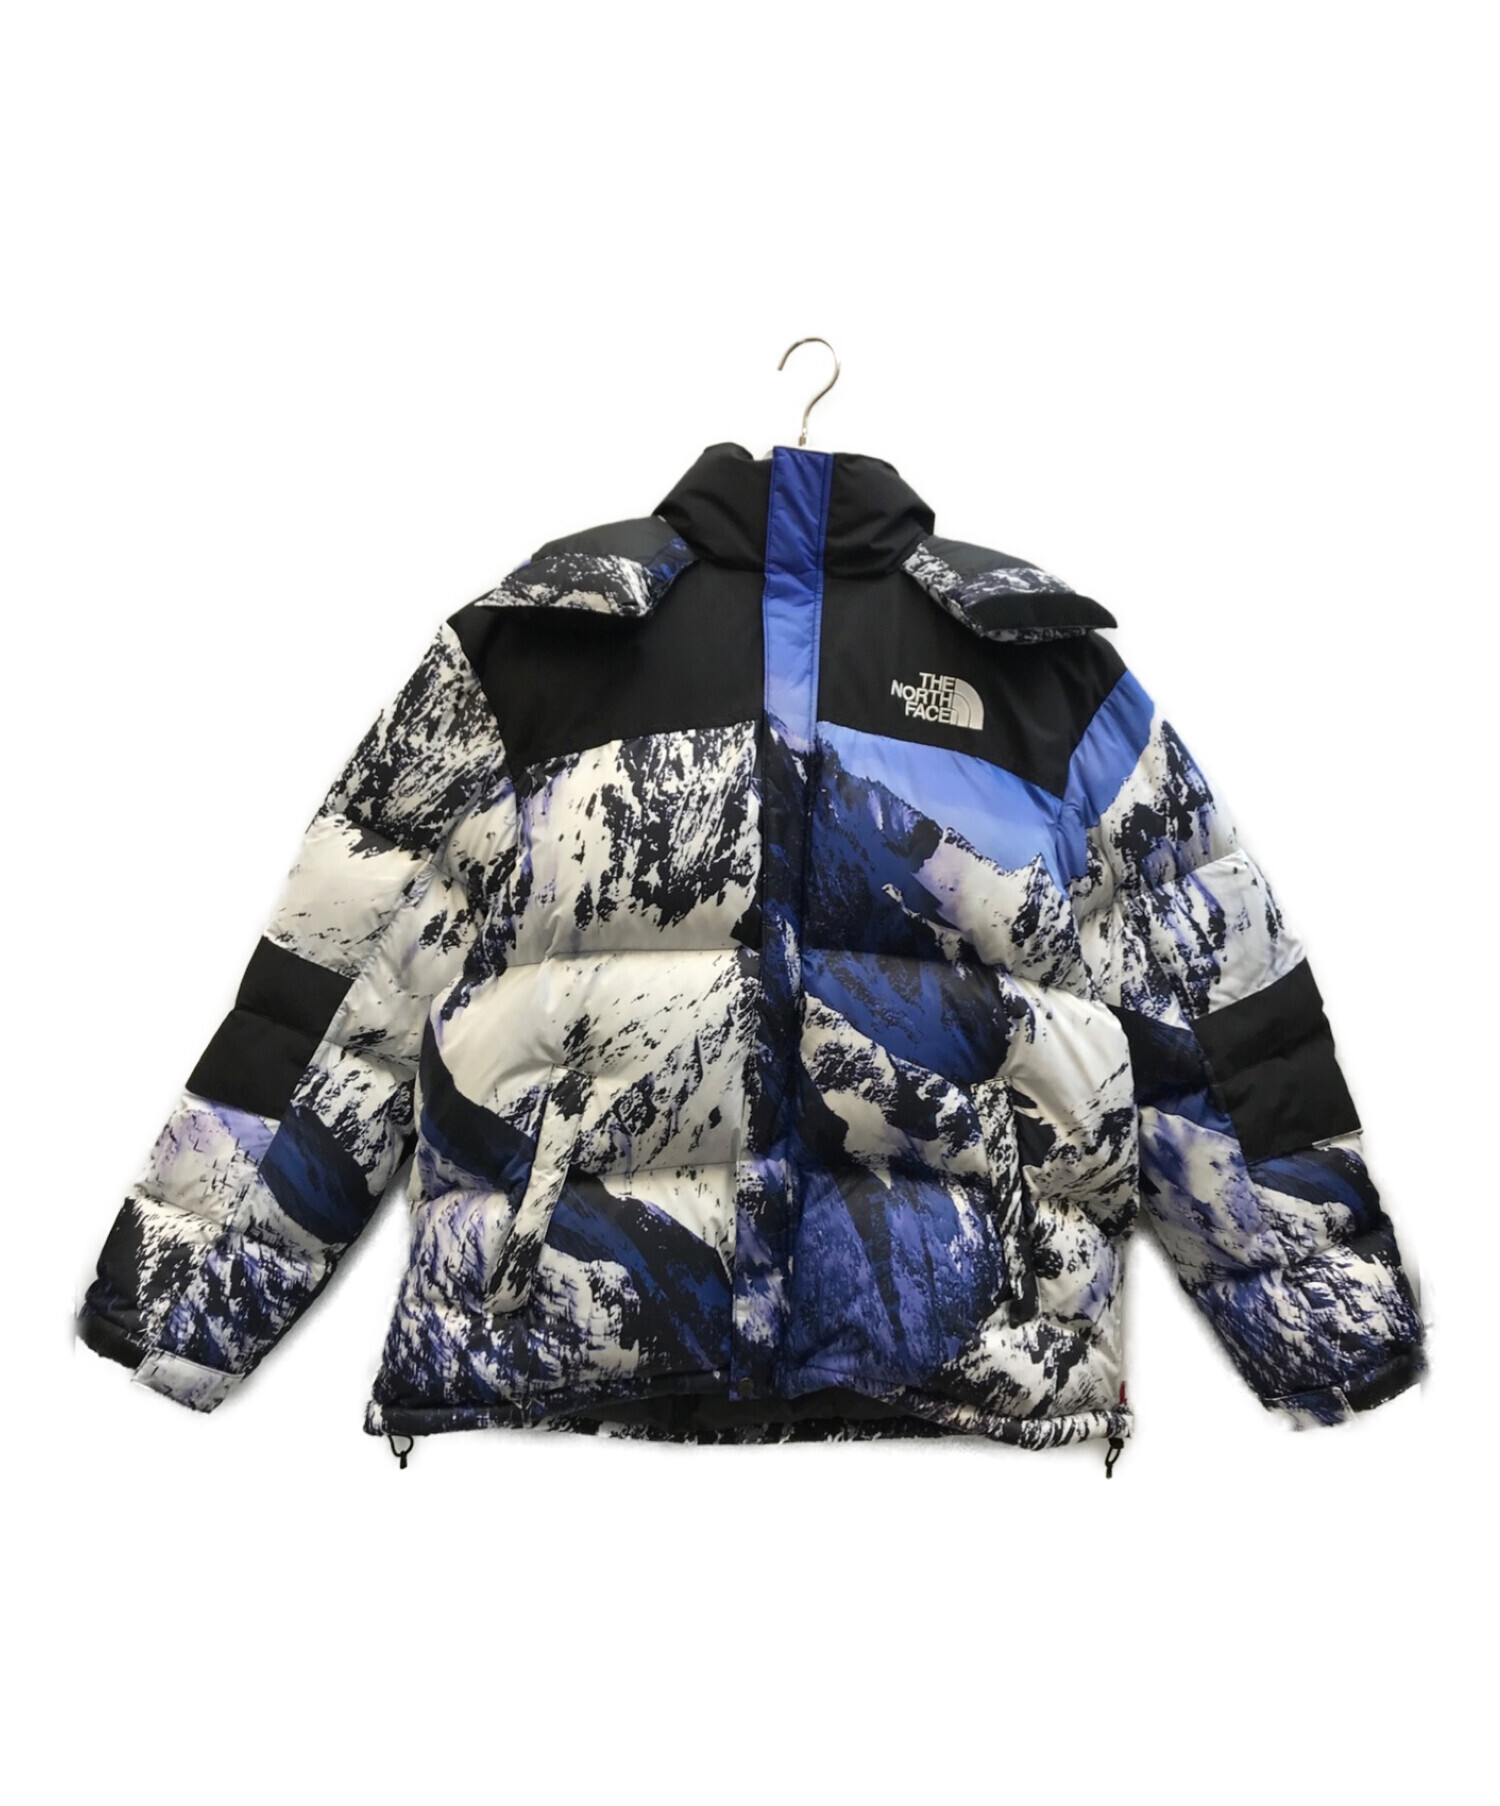 THE NORTH FACE (ザ ノース フェイス) SUPREME (シュプリーム) Mountain Baltoro Jacket ブルー  サイズ:XL